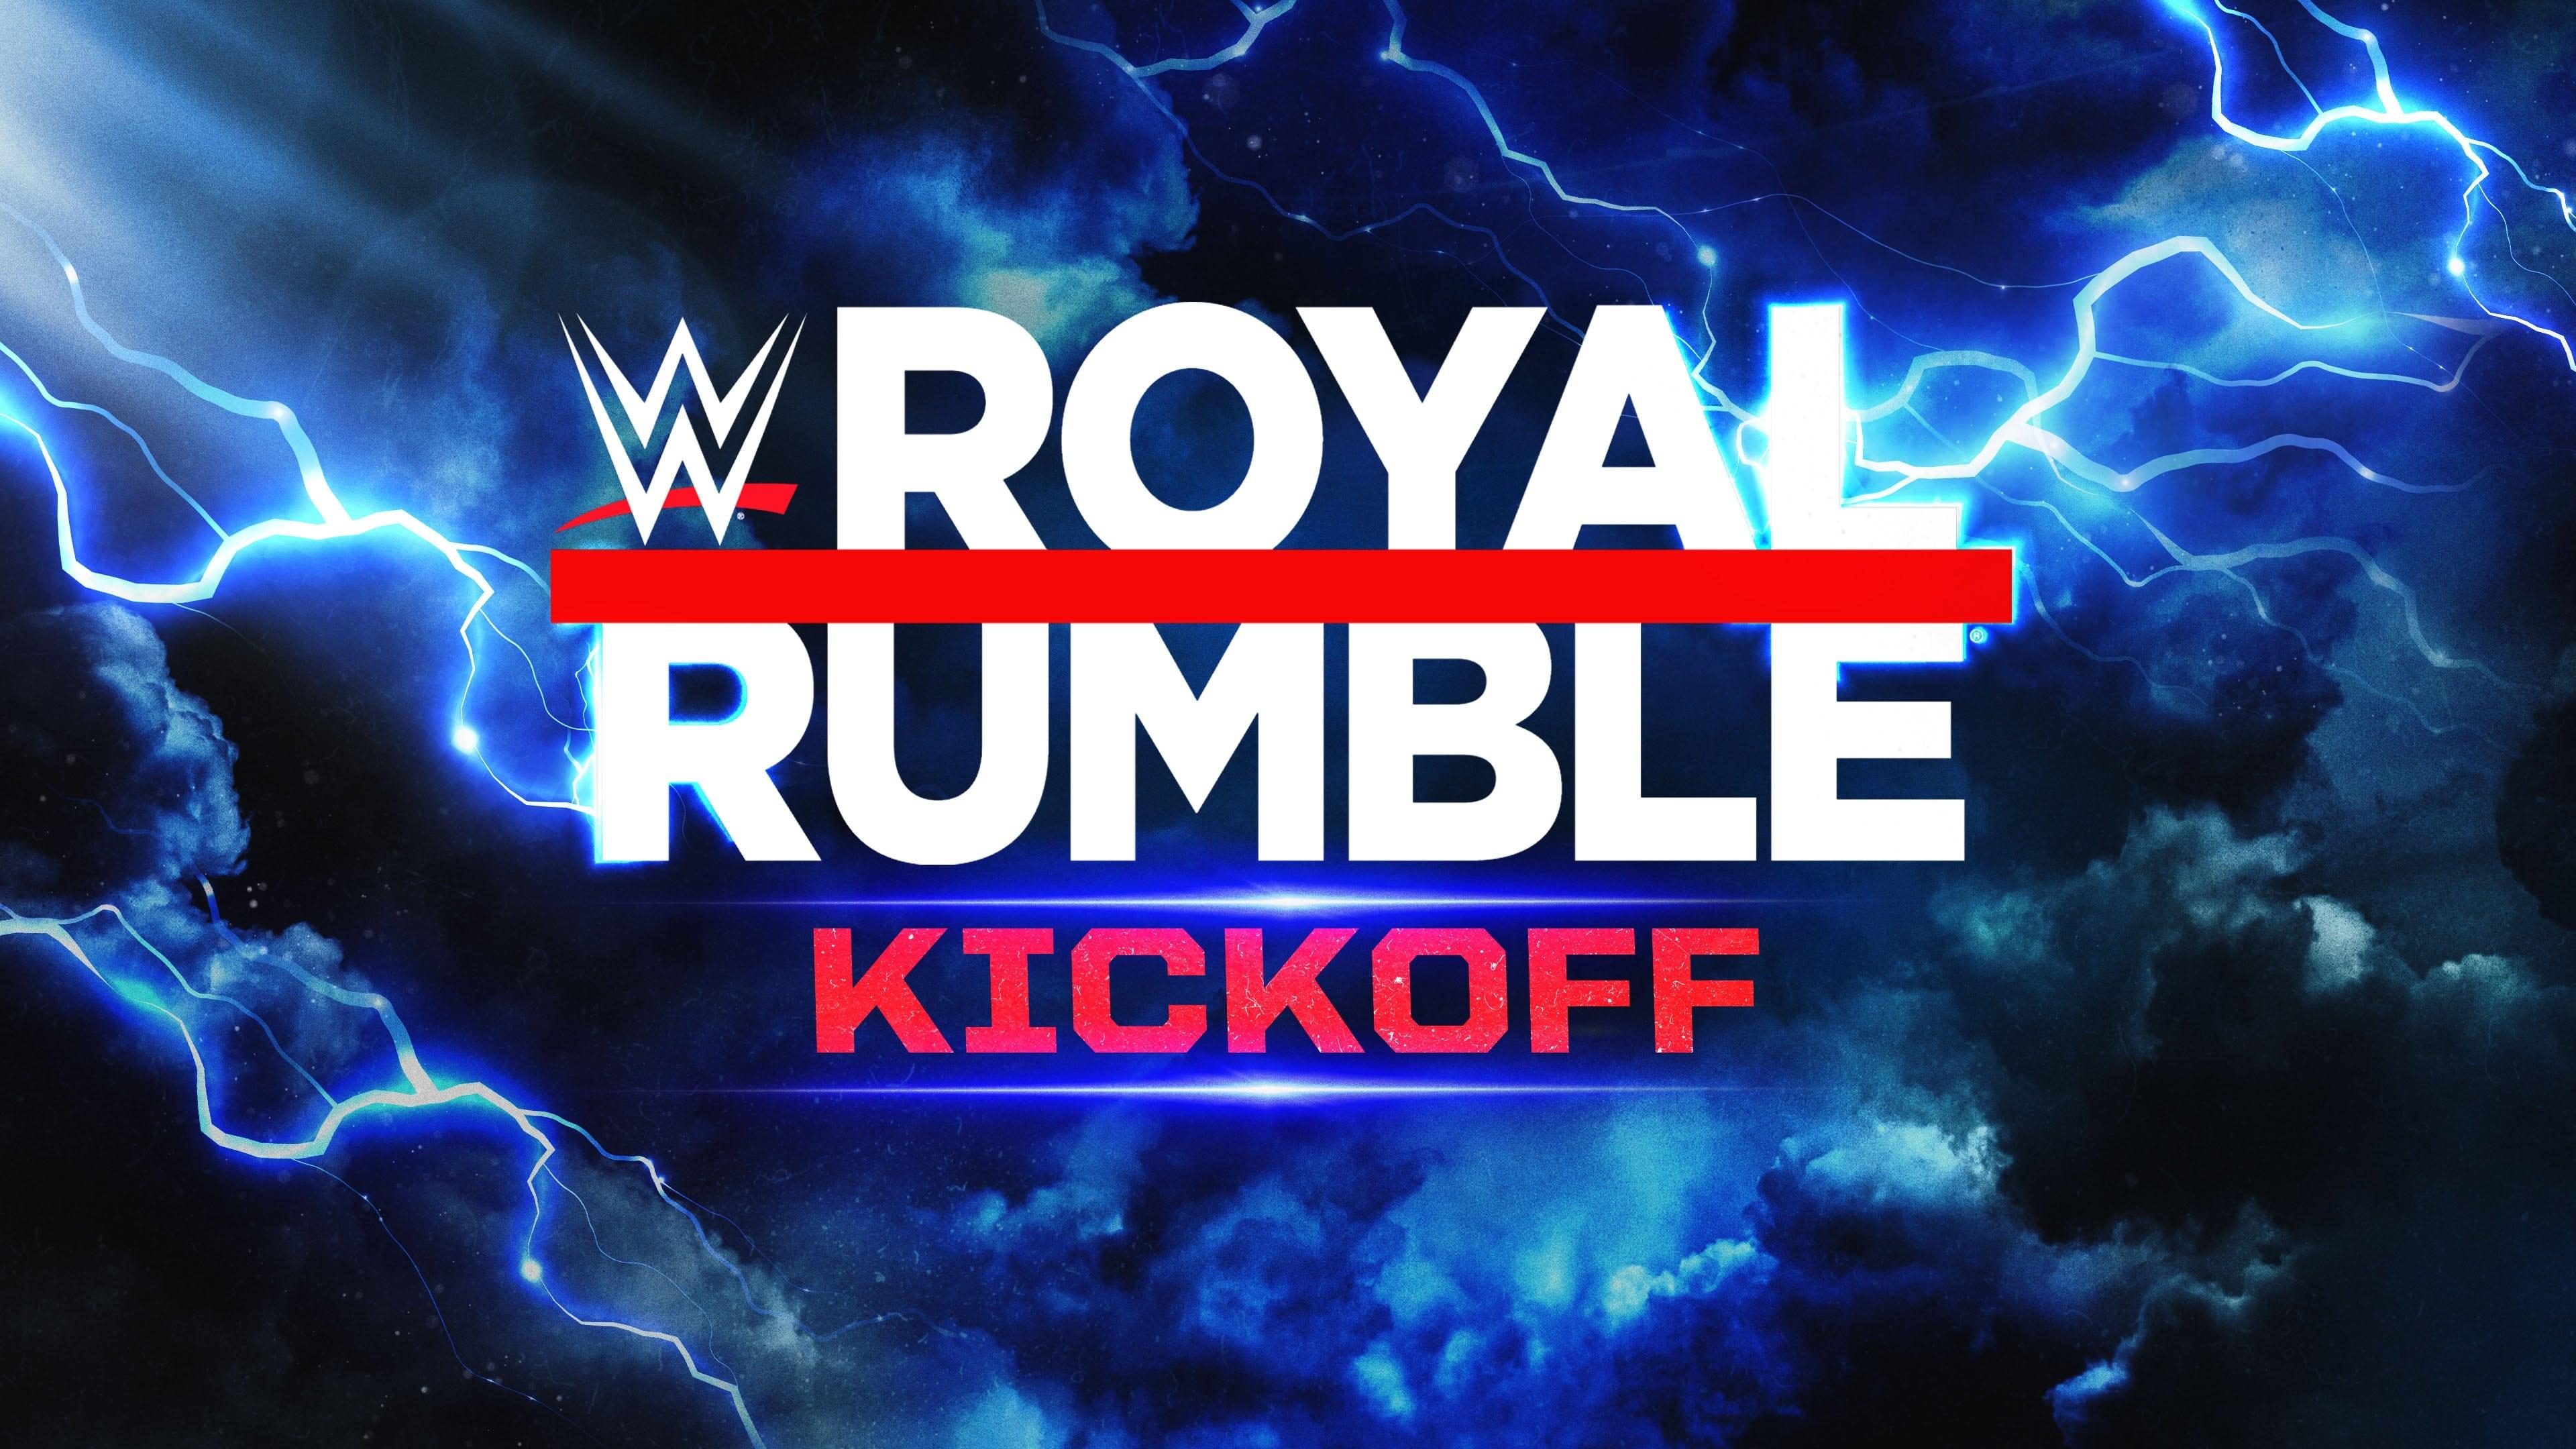 WWE Royal Rumble 2023 Kickoff backdrop